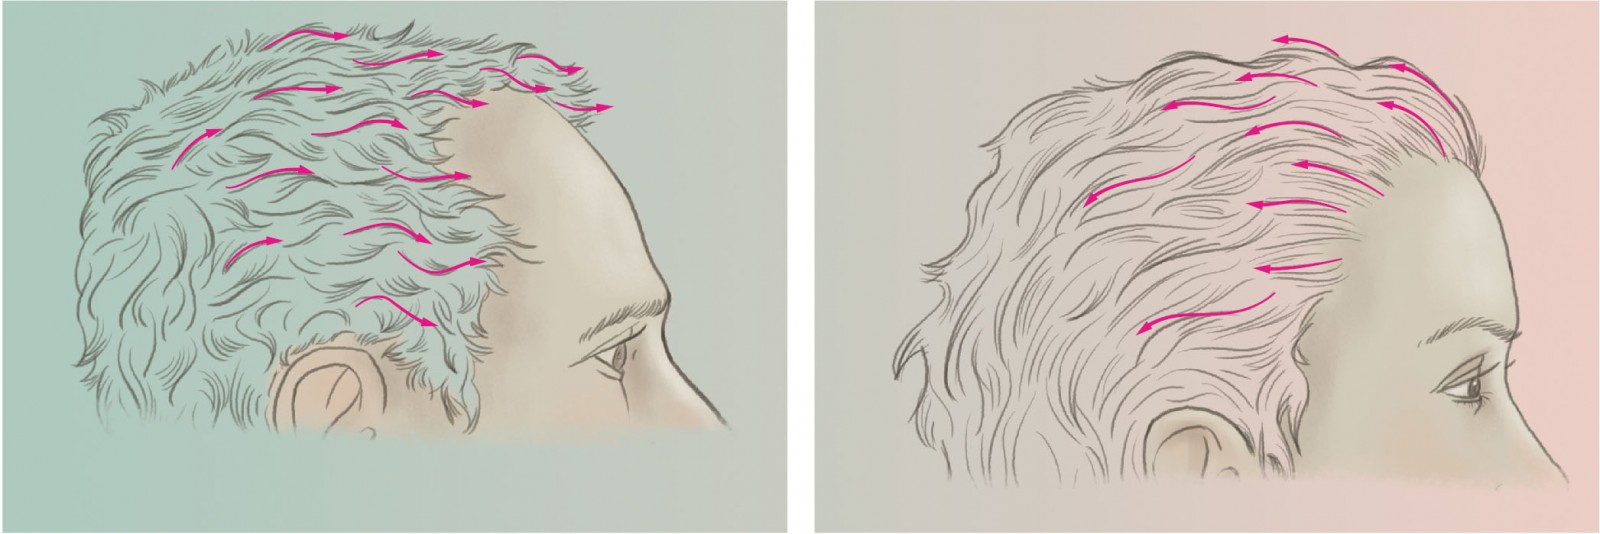 El flujo del cabello en la línea del cabello masculina vs femenina